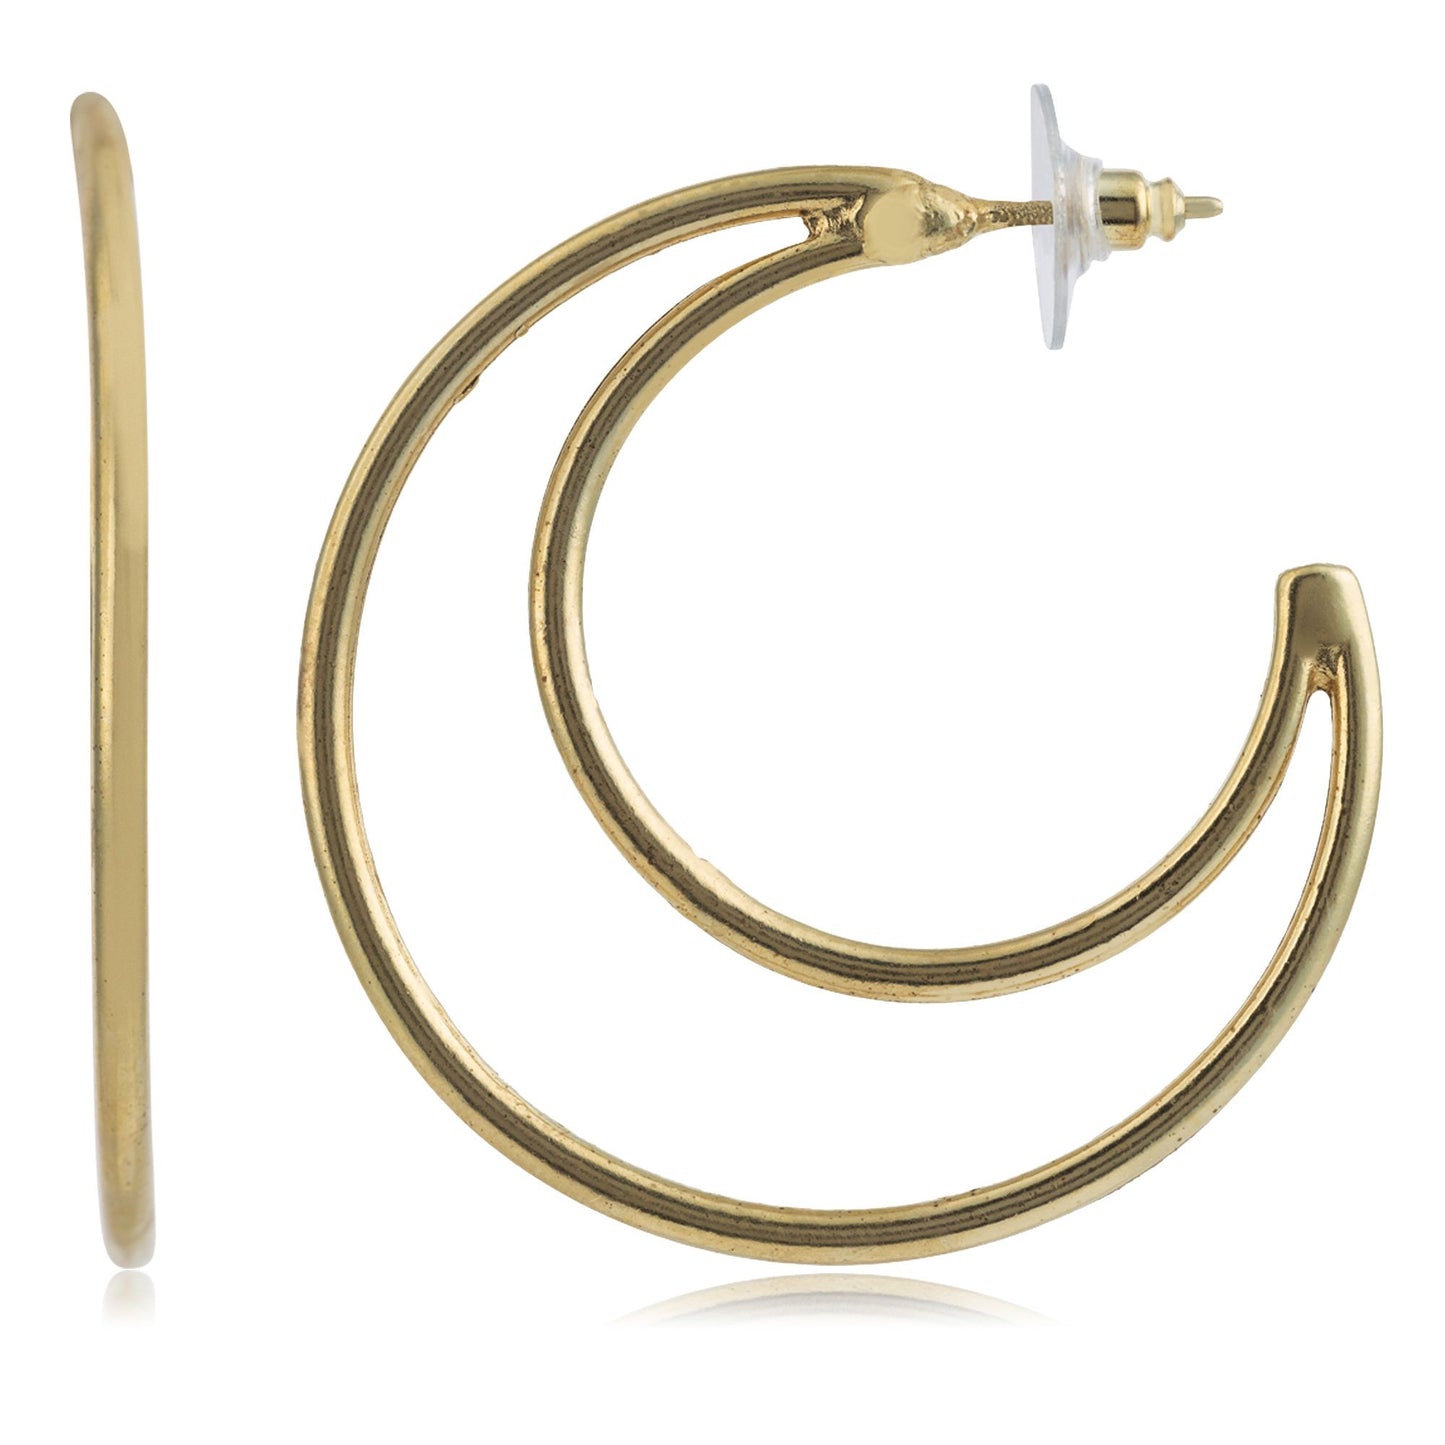 Golden double moon hoop earring